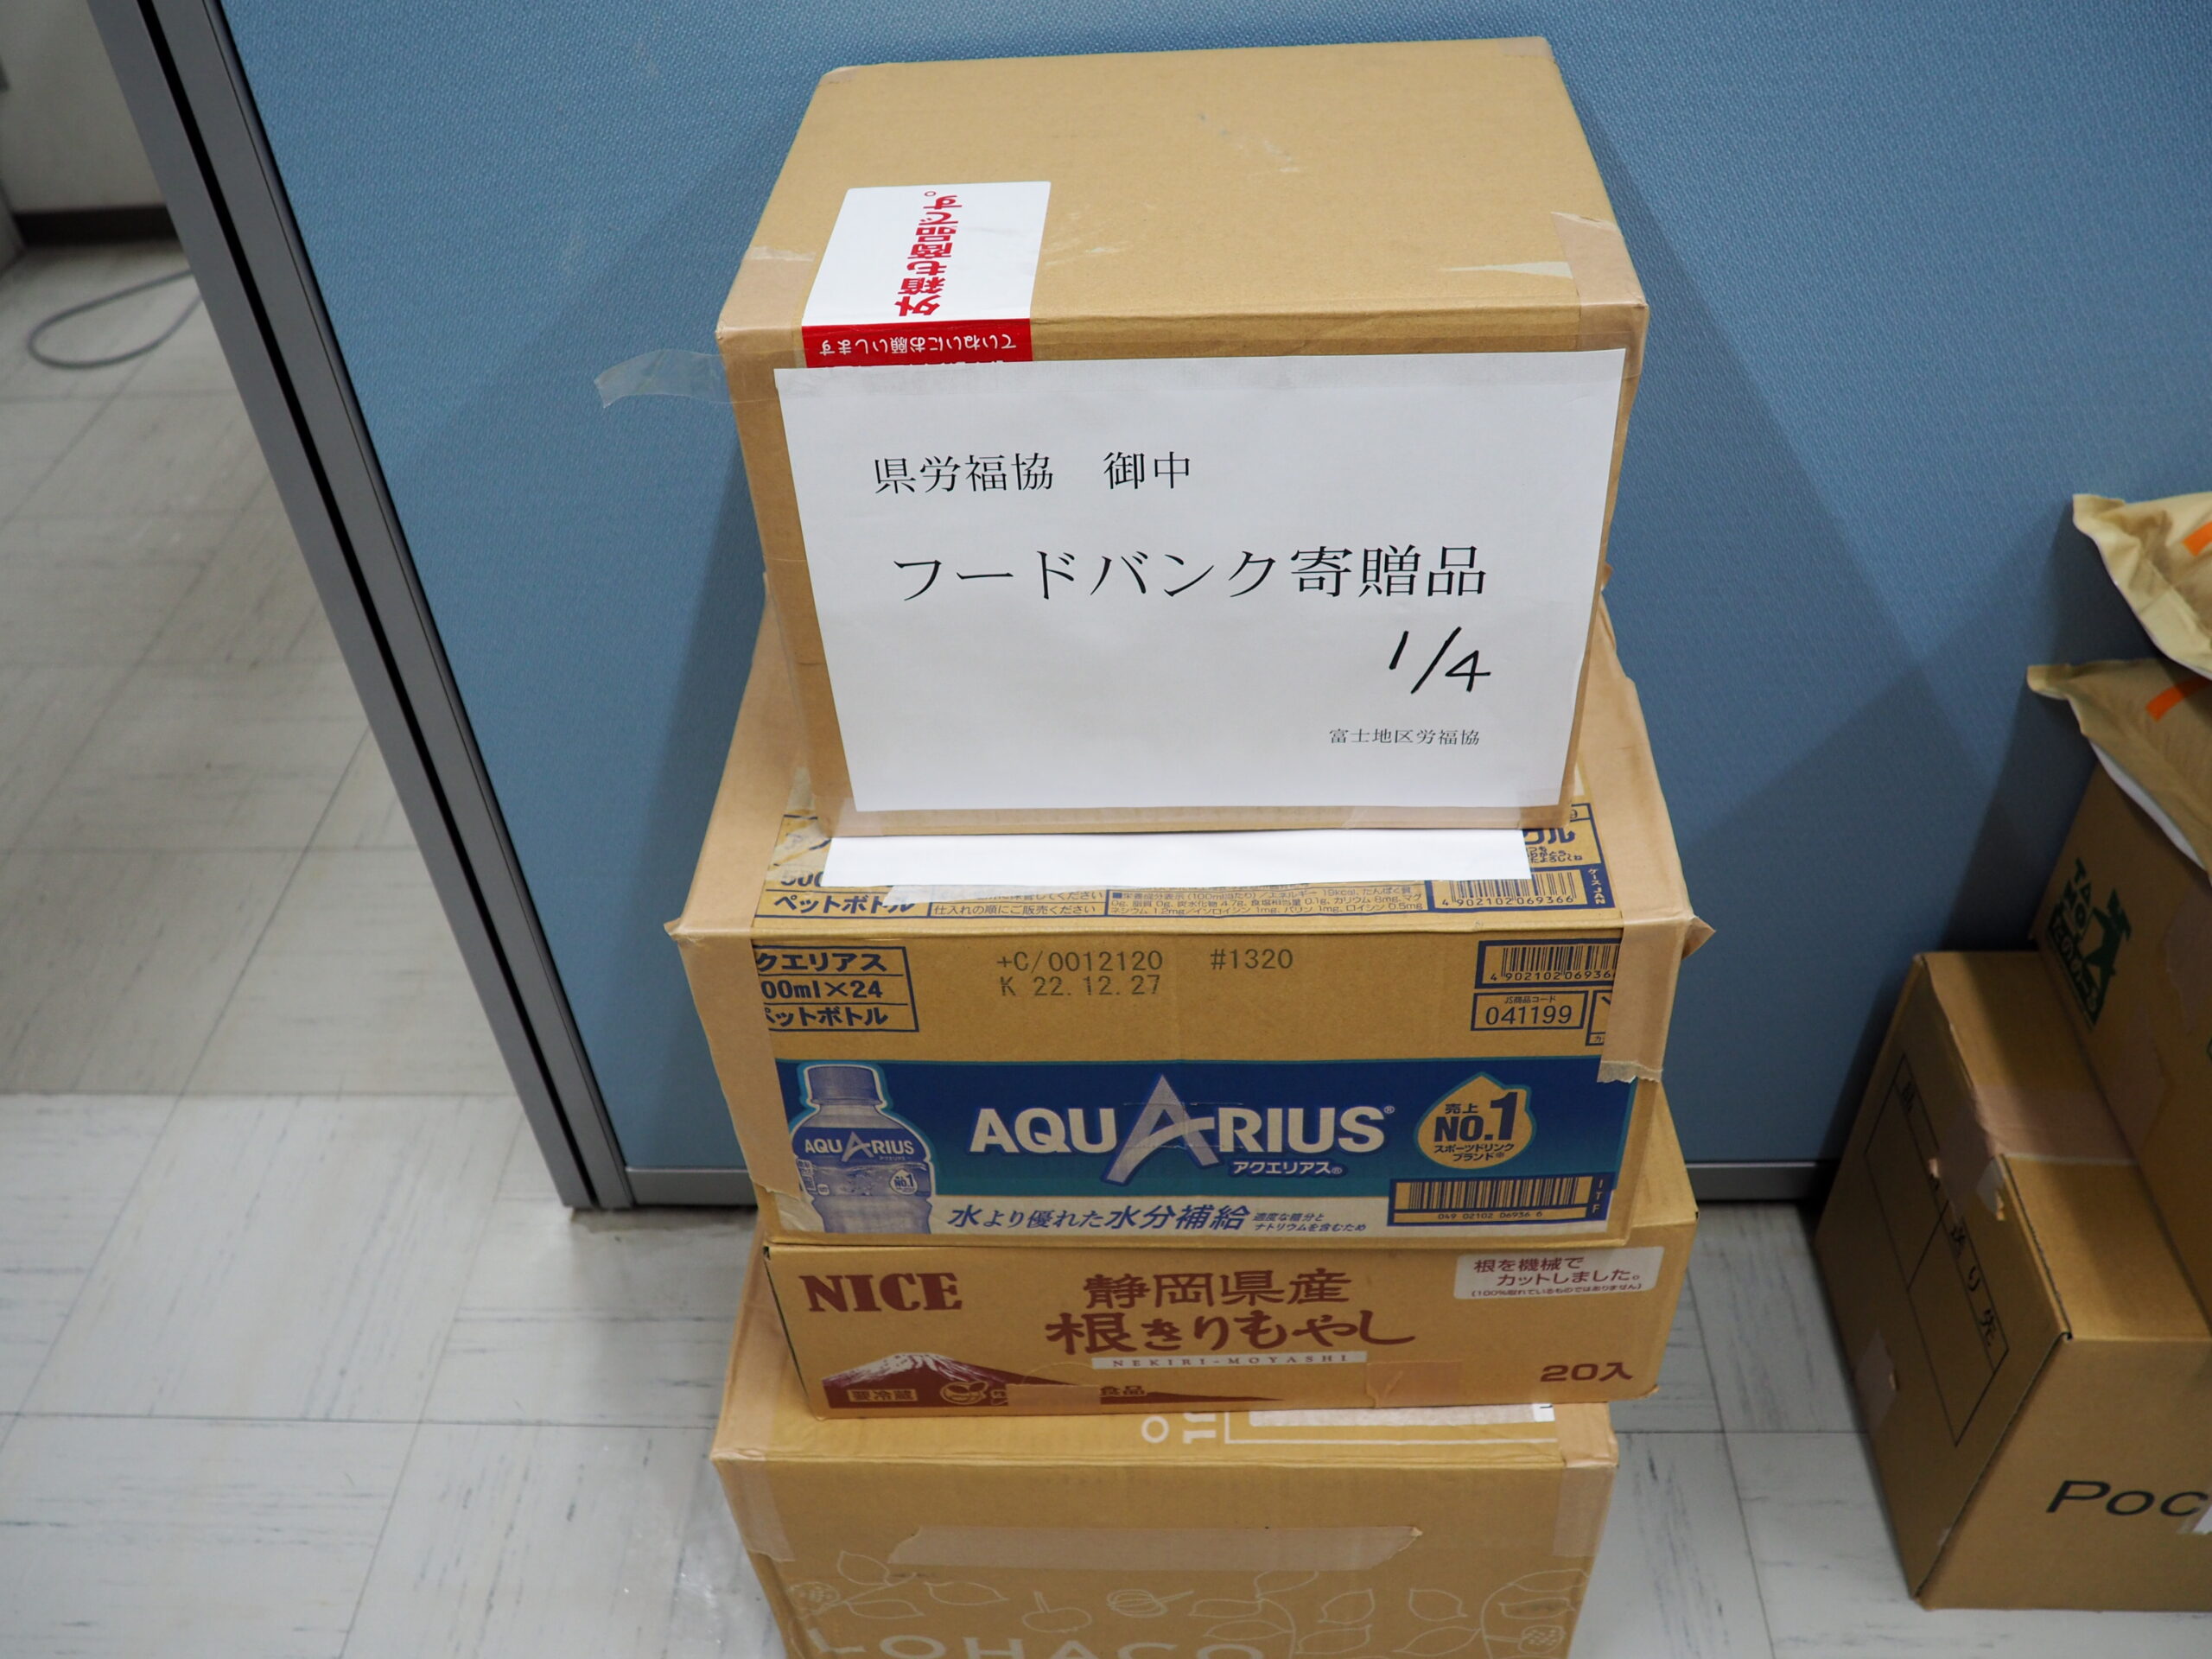 富士地区労働者福祉協議会様・全矢崎労働組合大浜支部様から食品を提供いただきました。